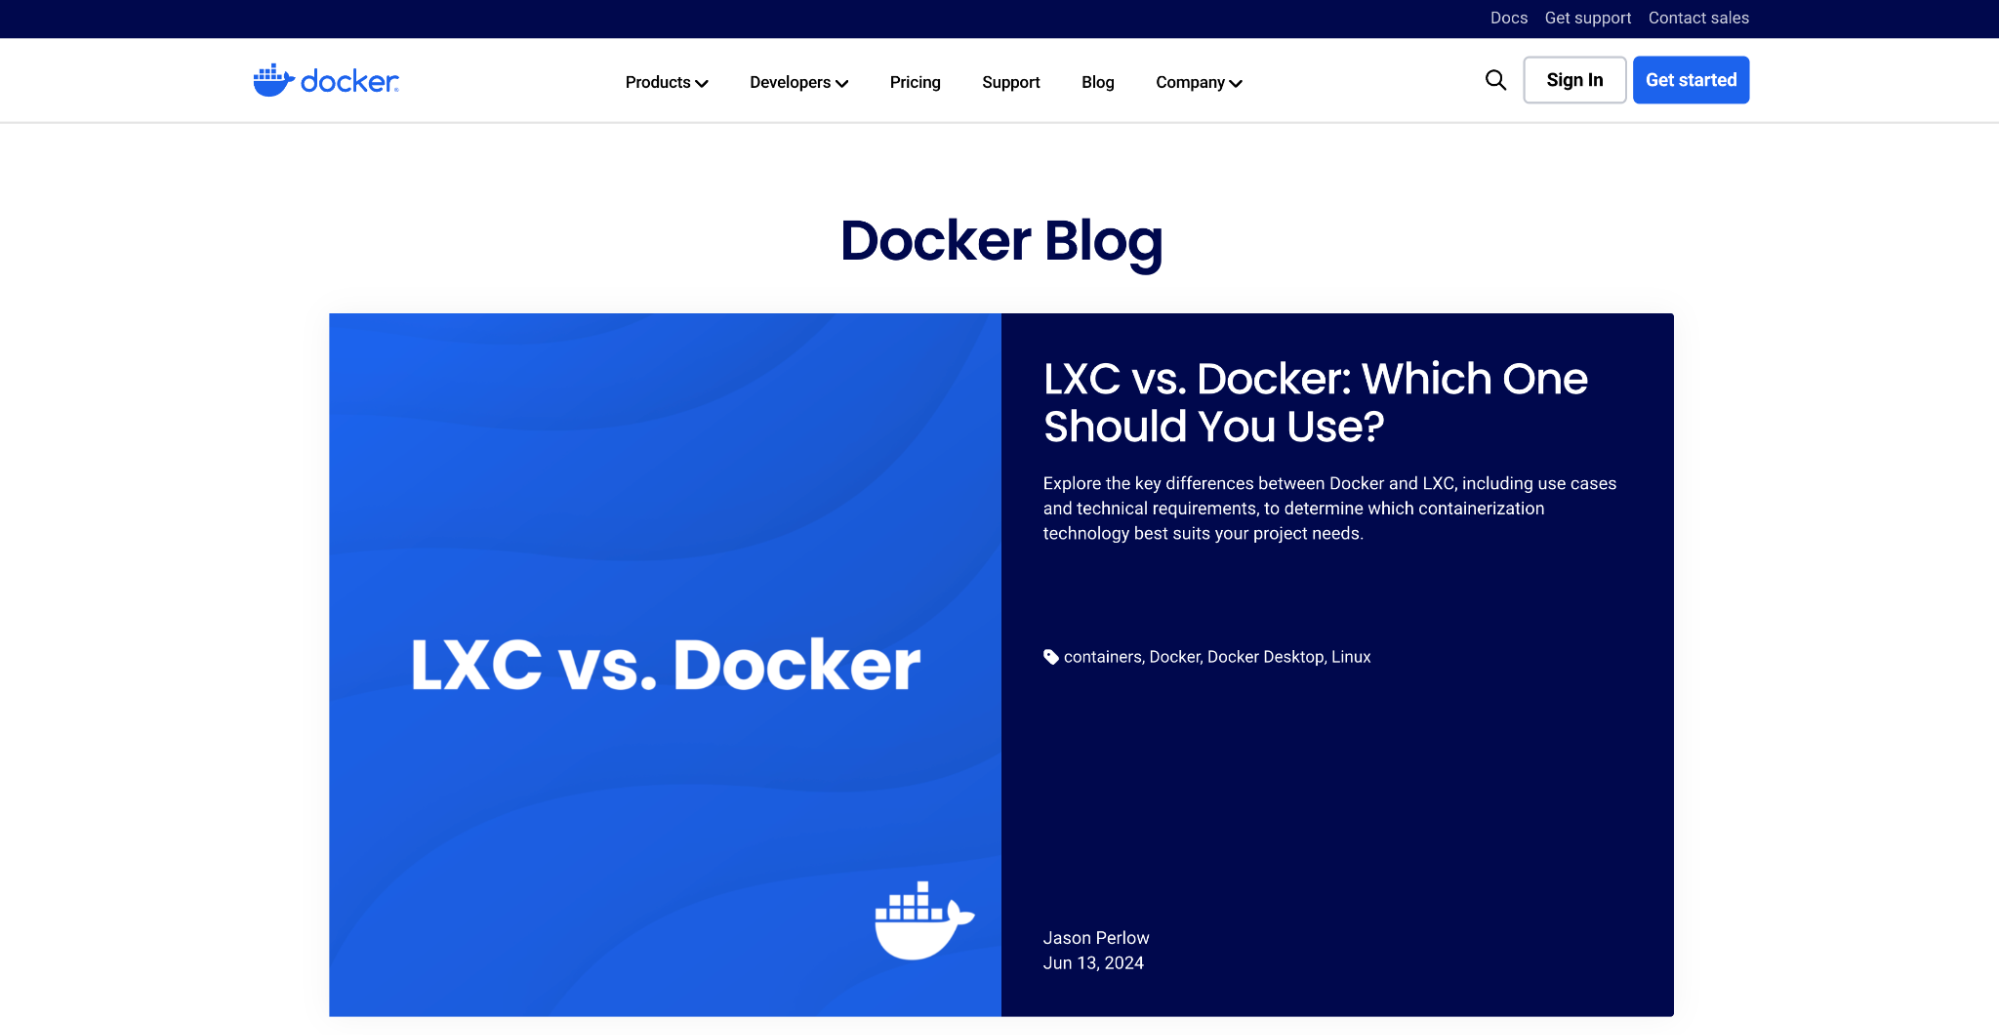 The Docker Blog